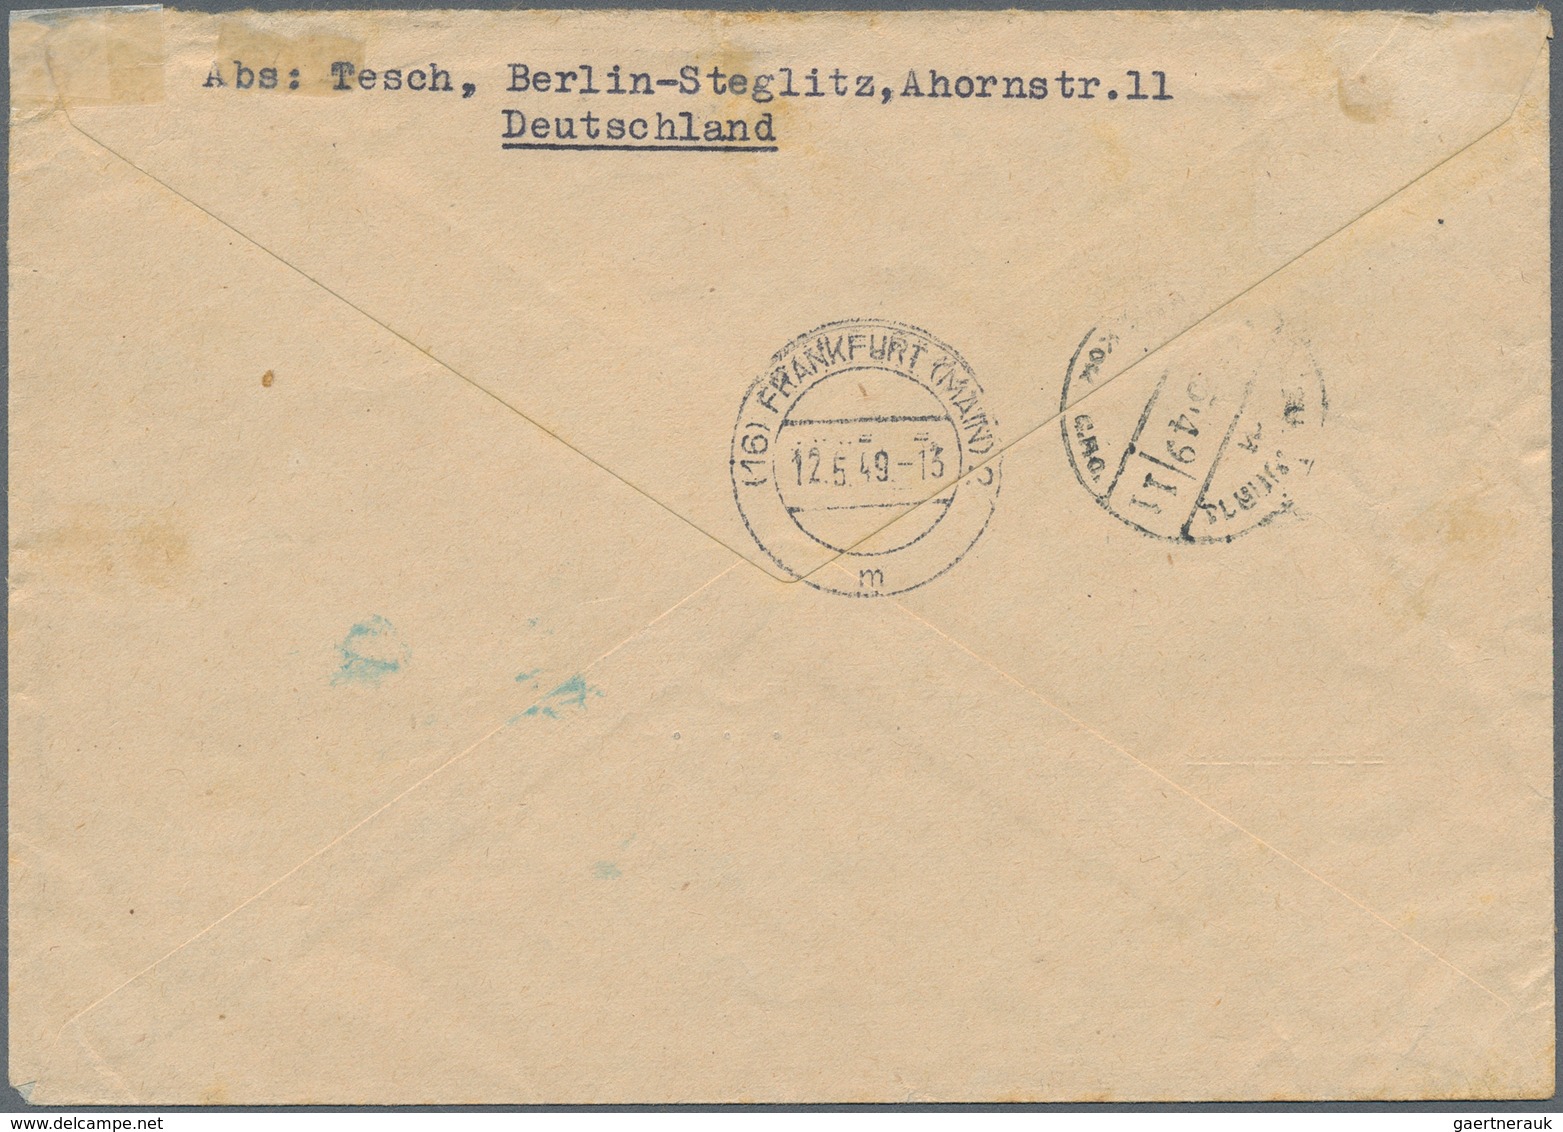 Berlin: 1 DM Rotaufdruck Mit 50 Pf. Stephan Zusammen Auf Lp-Überseebf. Zum IAS-Tarif Ab Berlin-Stegl - Covers & Documents